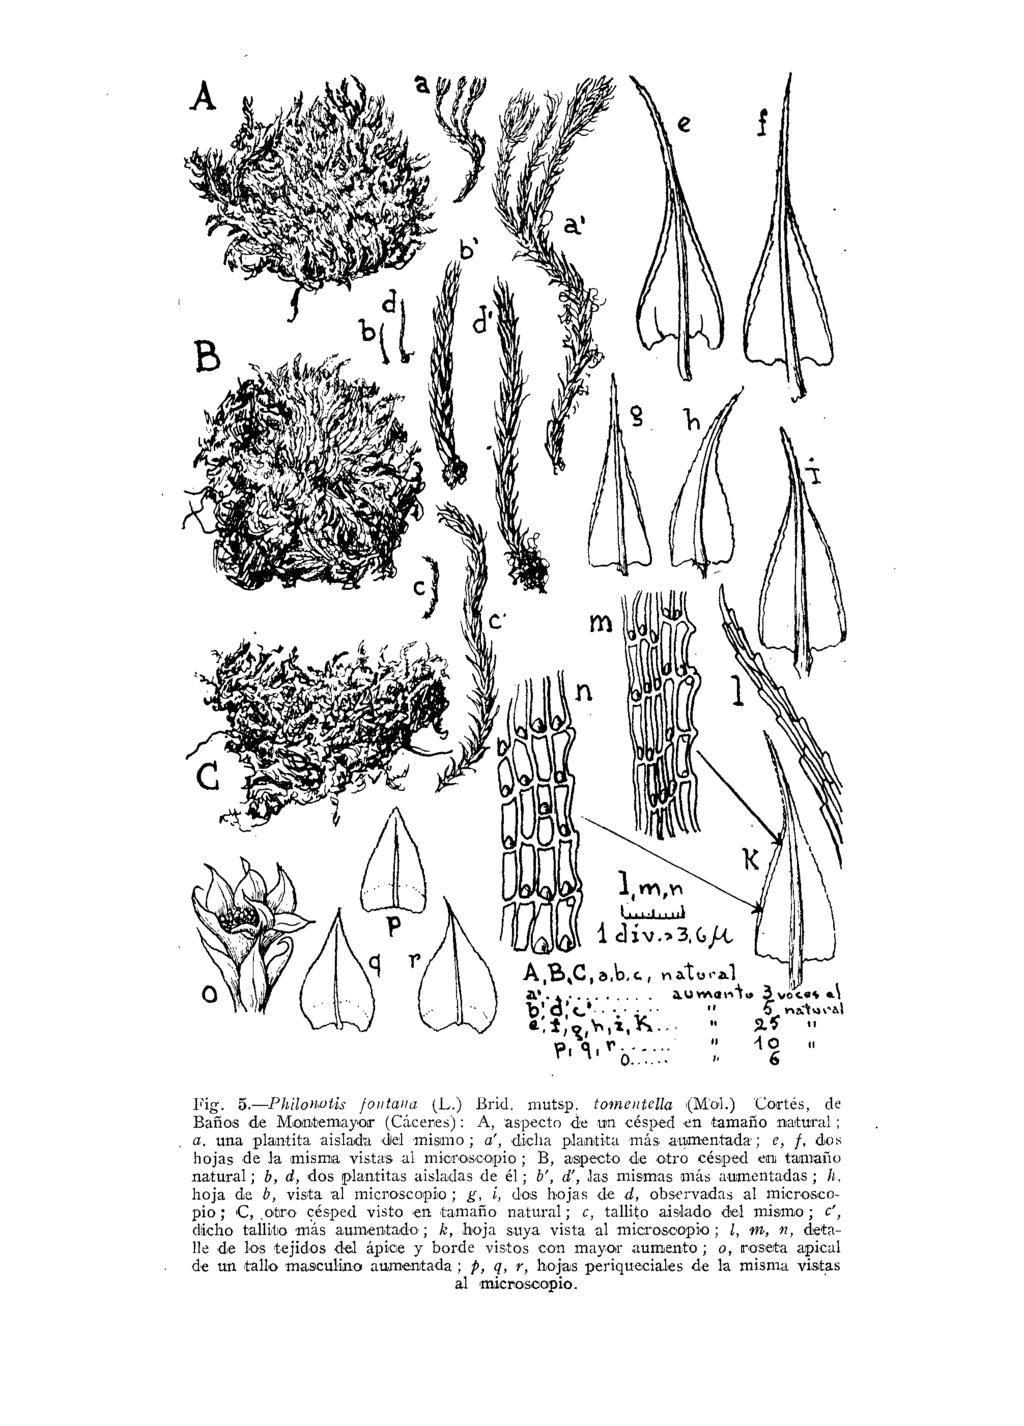 Fig. 5. Philoiwtis fontana (L.) Brid, niutsp. tomentella (Mol.) Cortés, de Baños de Montemayor (Cáceres): A, aspecto de un césped en tamaño natural ;, a.